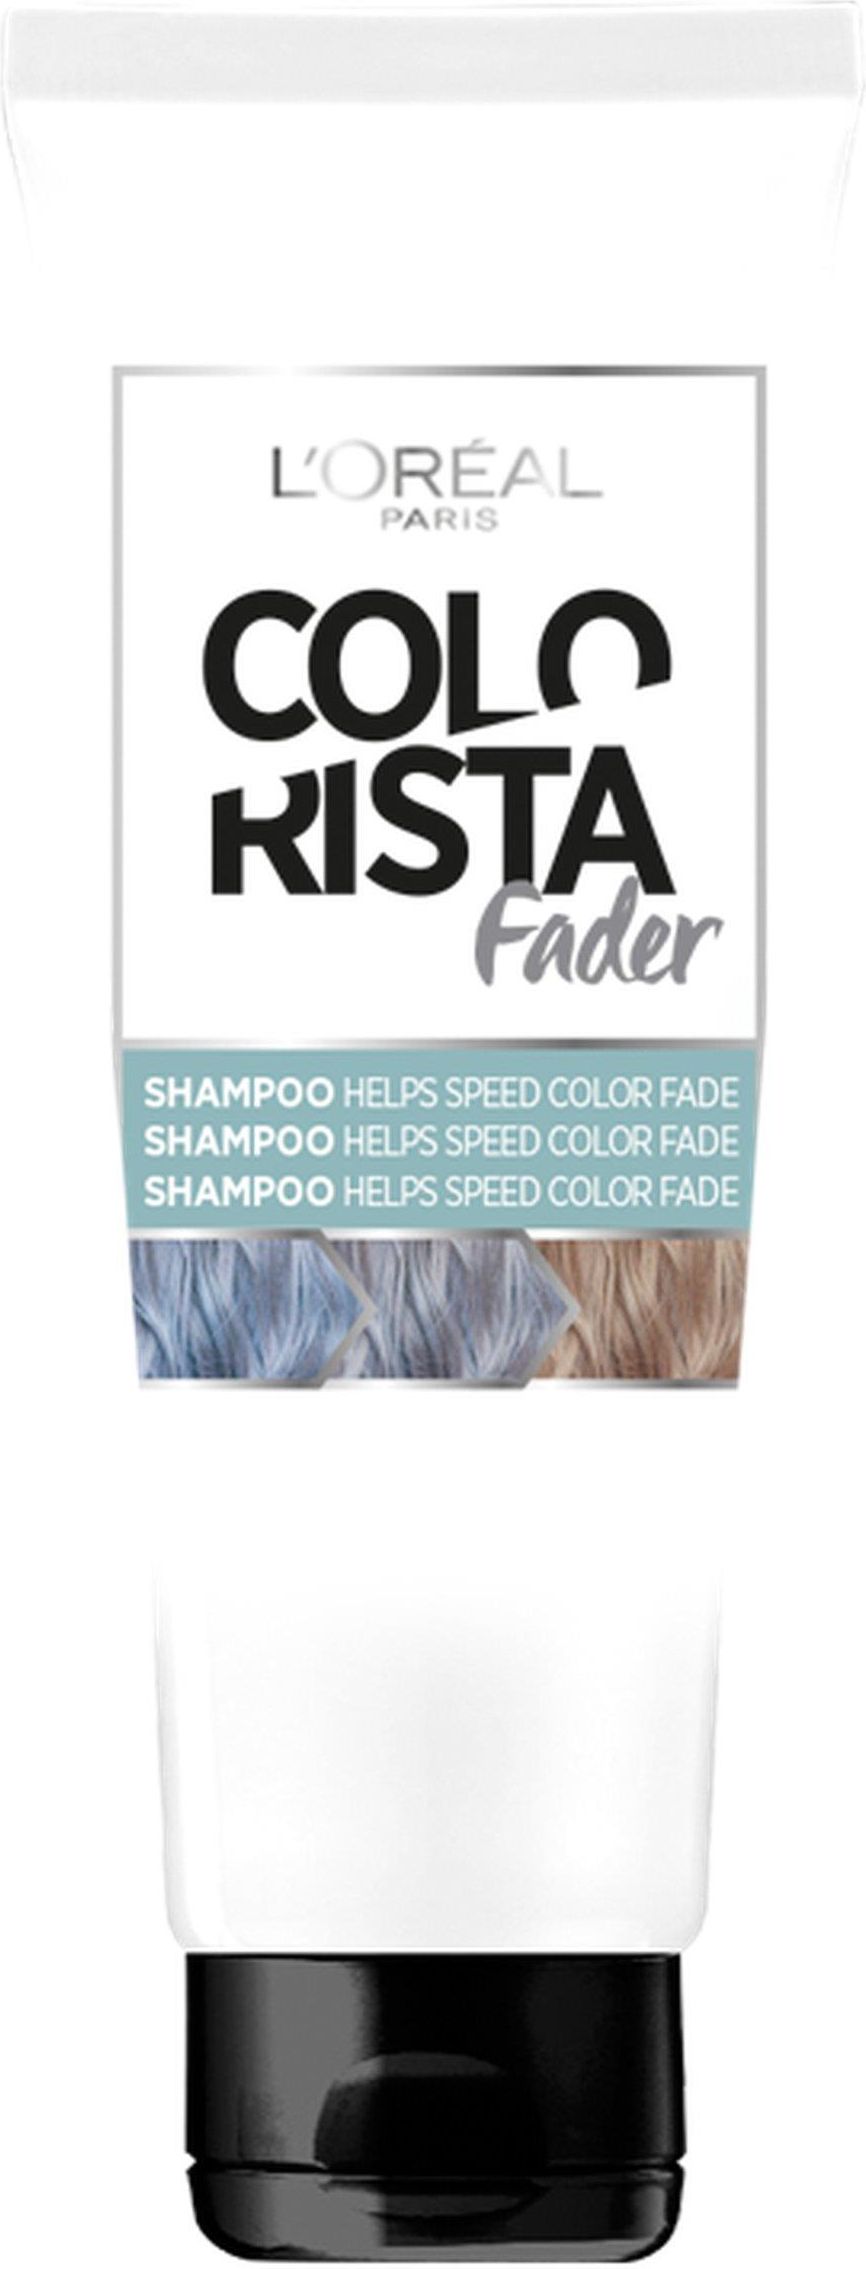 szampon loreal przyspieszajacy wyplukiwanie koloru